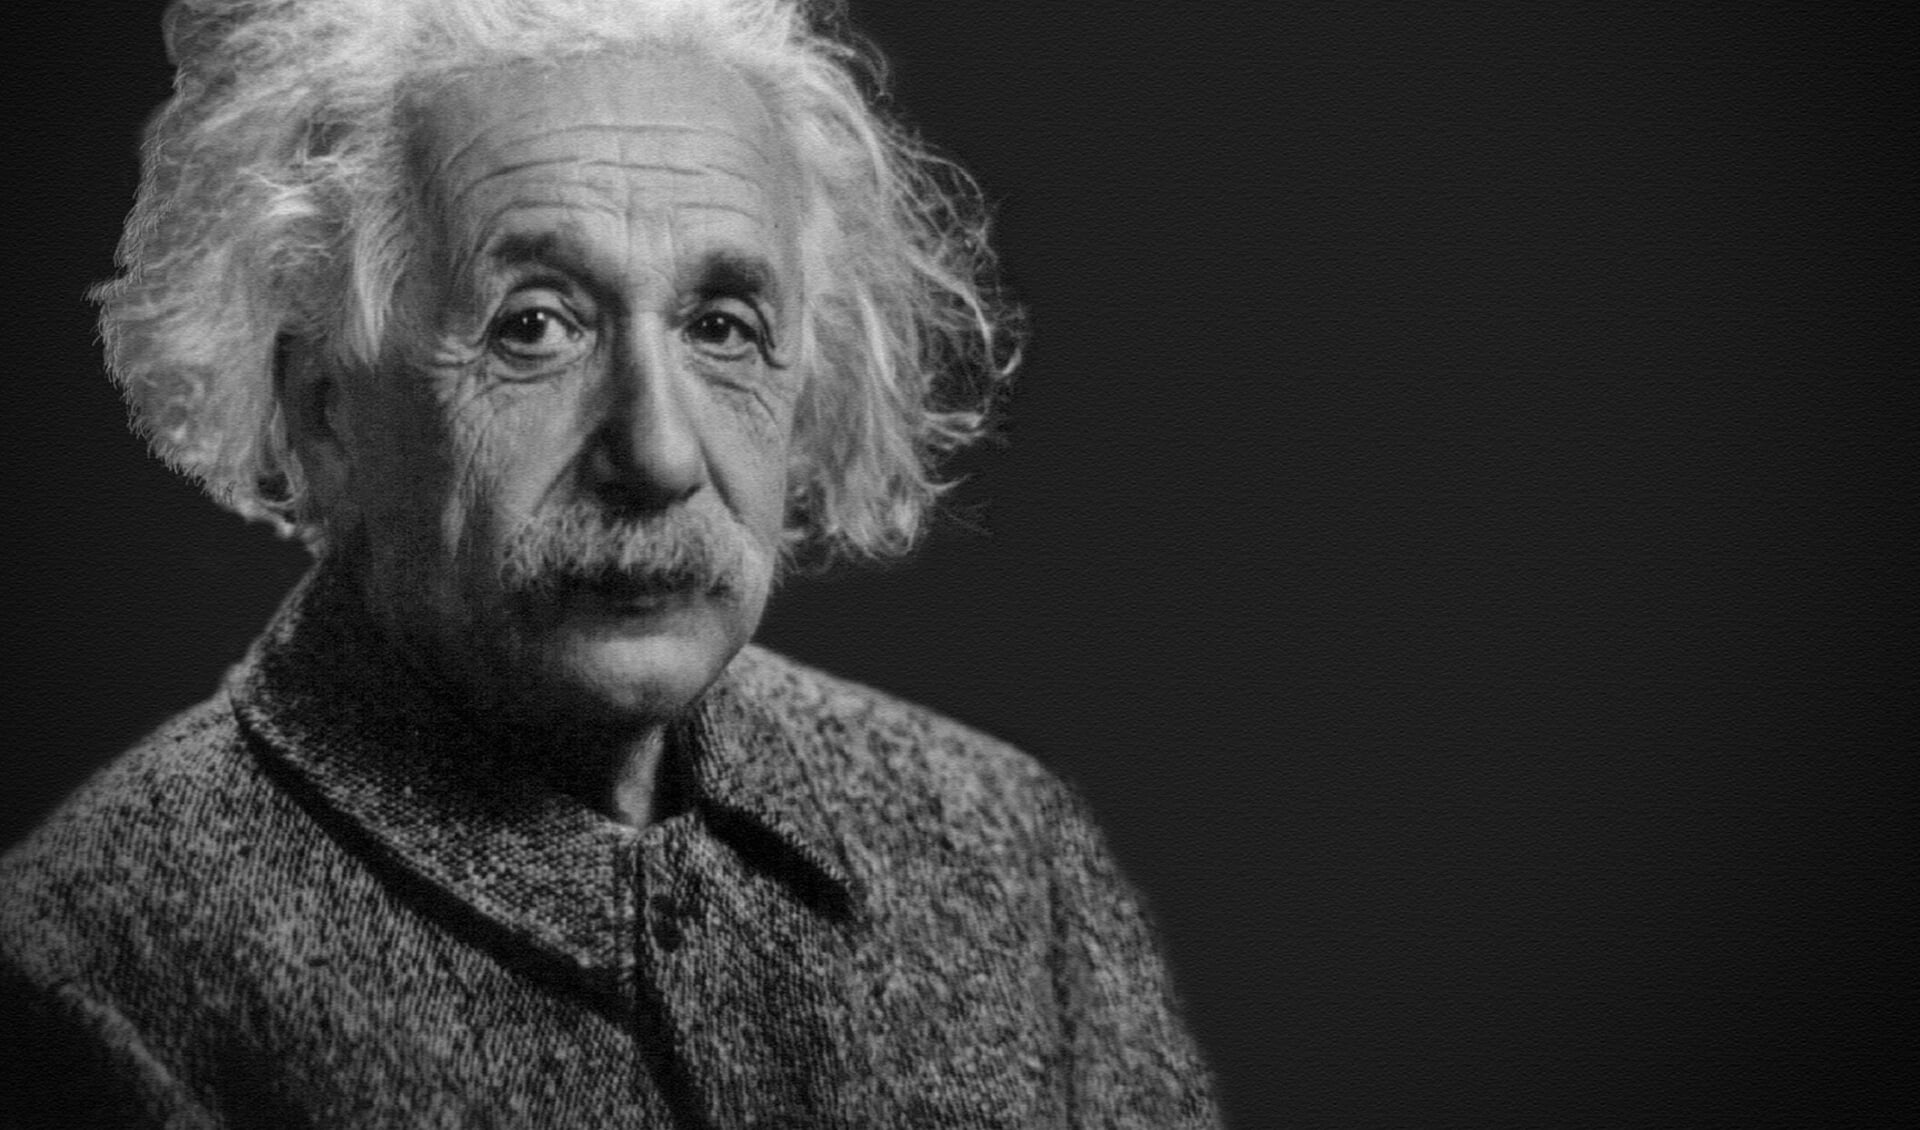 De meeste mensen kennen Albert Einstein van zijn relativiteitstheorie, maar wat dat precies inhoudt....? 